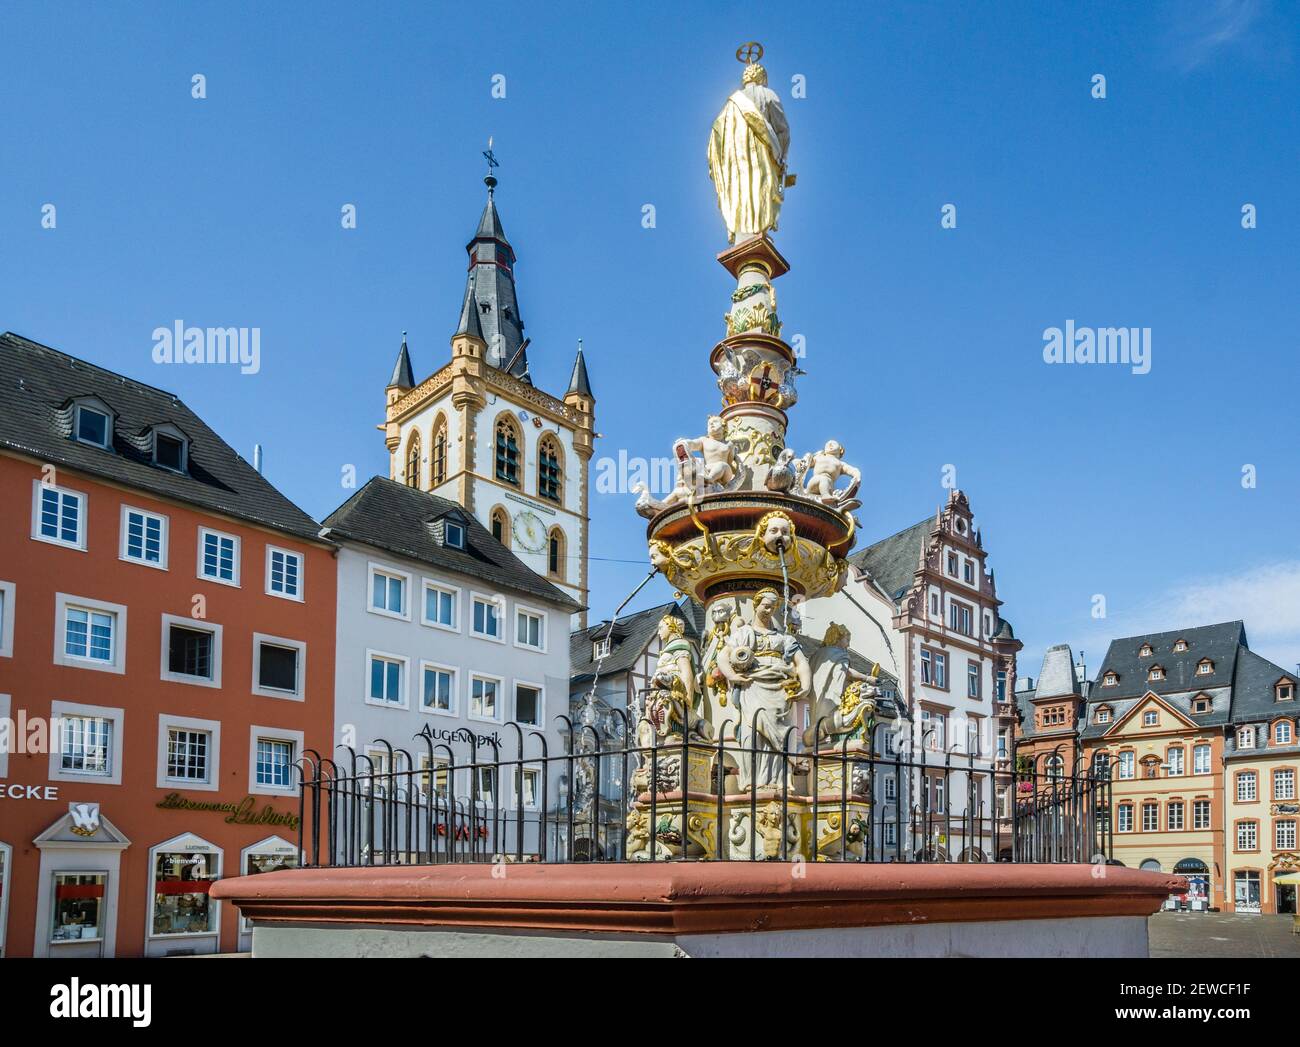 Hauptmarkt la place du marché principal de l'ancienne ville de Trèves, avec fontaine du marché et statue de Saint-Pierre, Rhénanie-Palatinat, Allemagne Banque D'Images